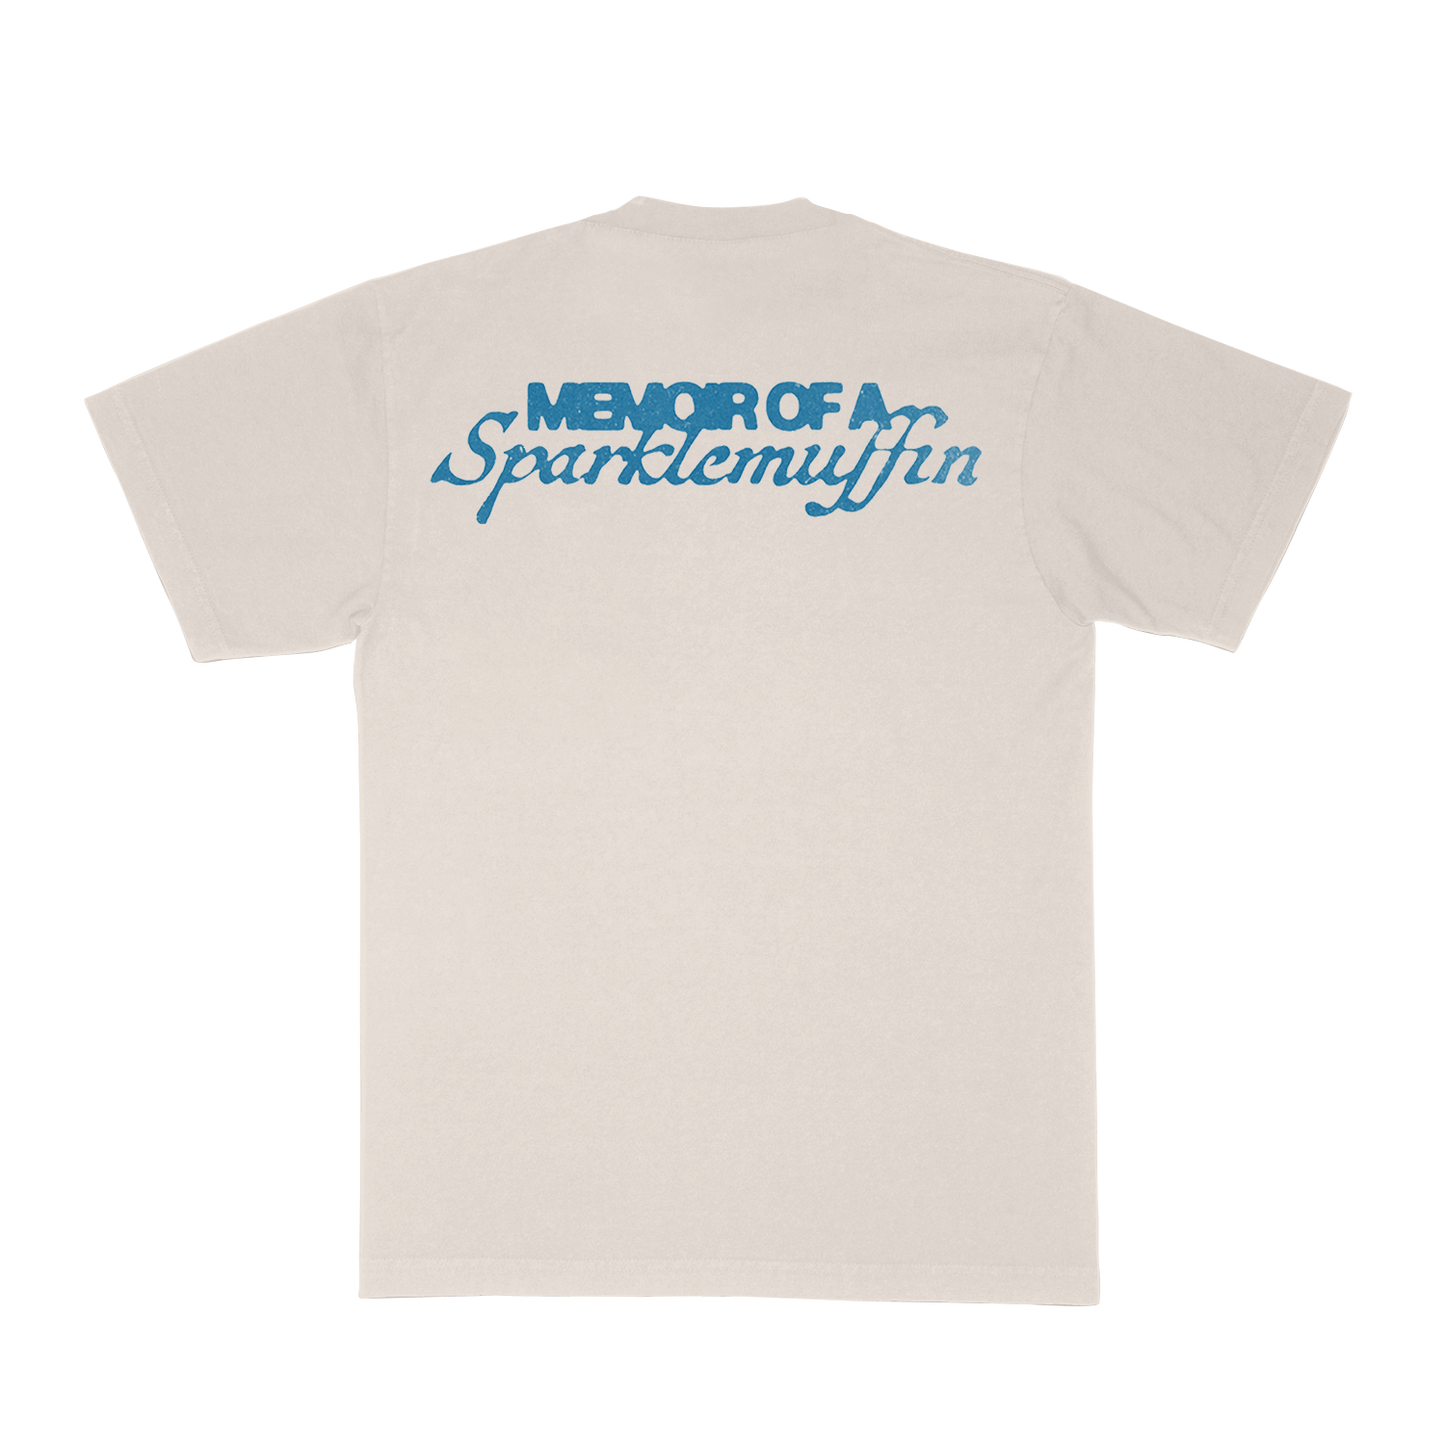 Sparklemuffin Spider T-shirt